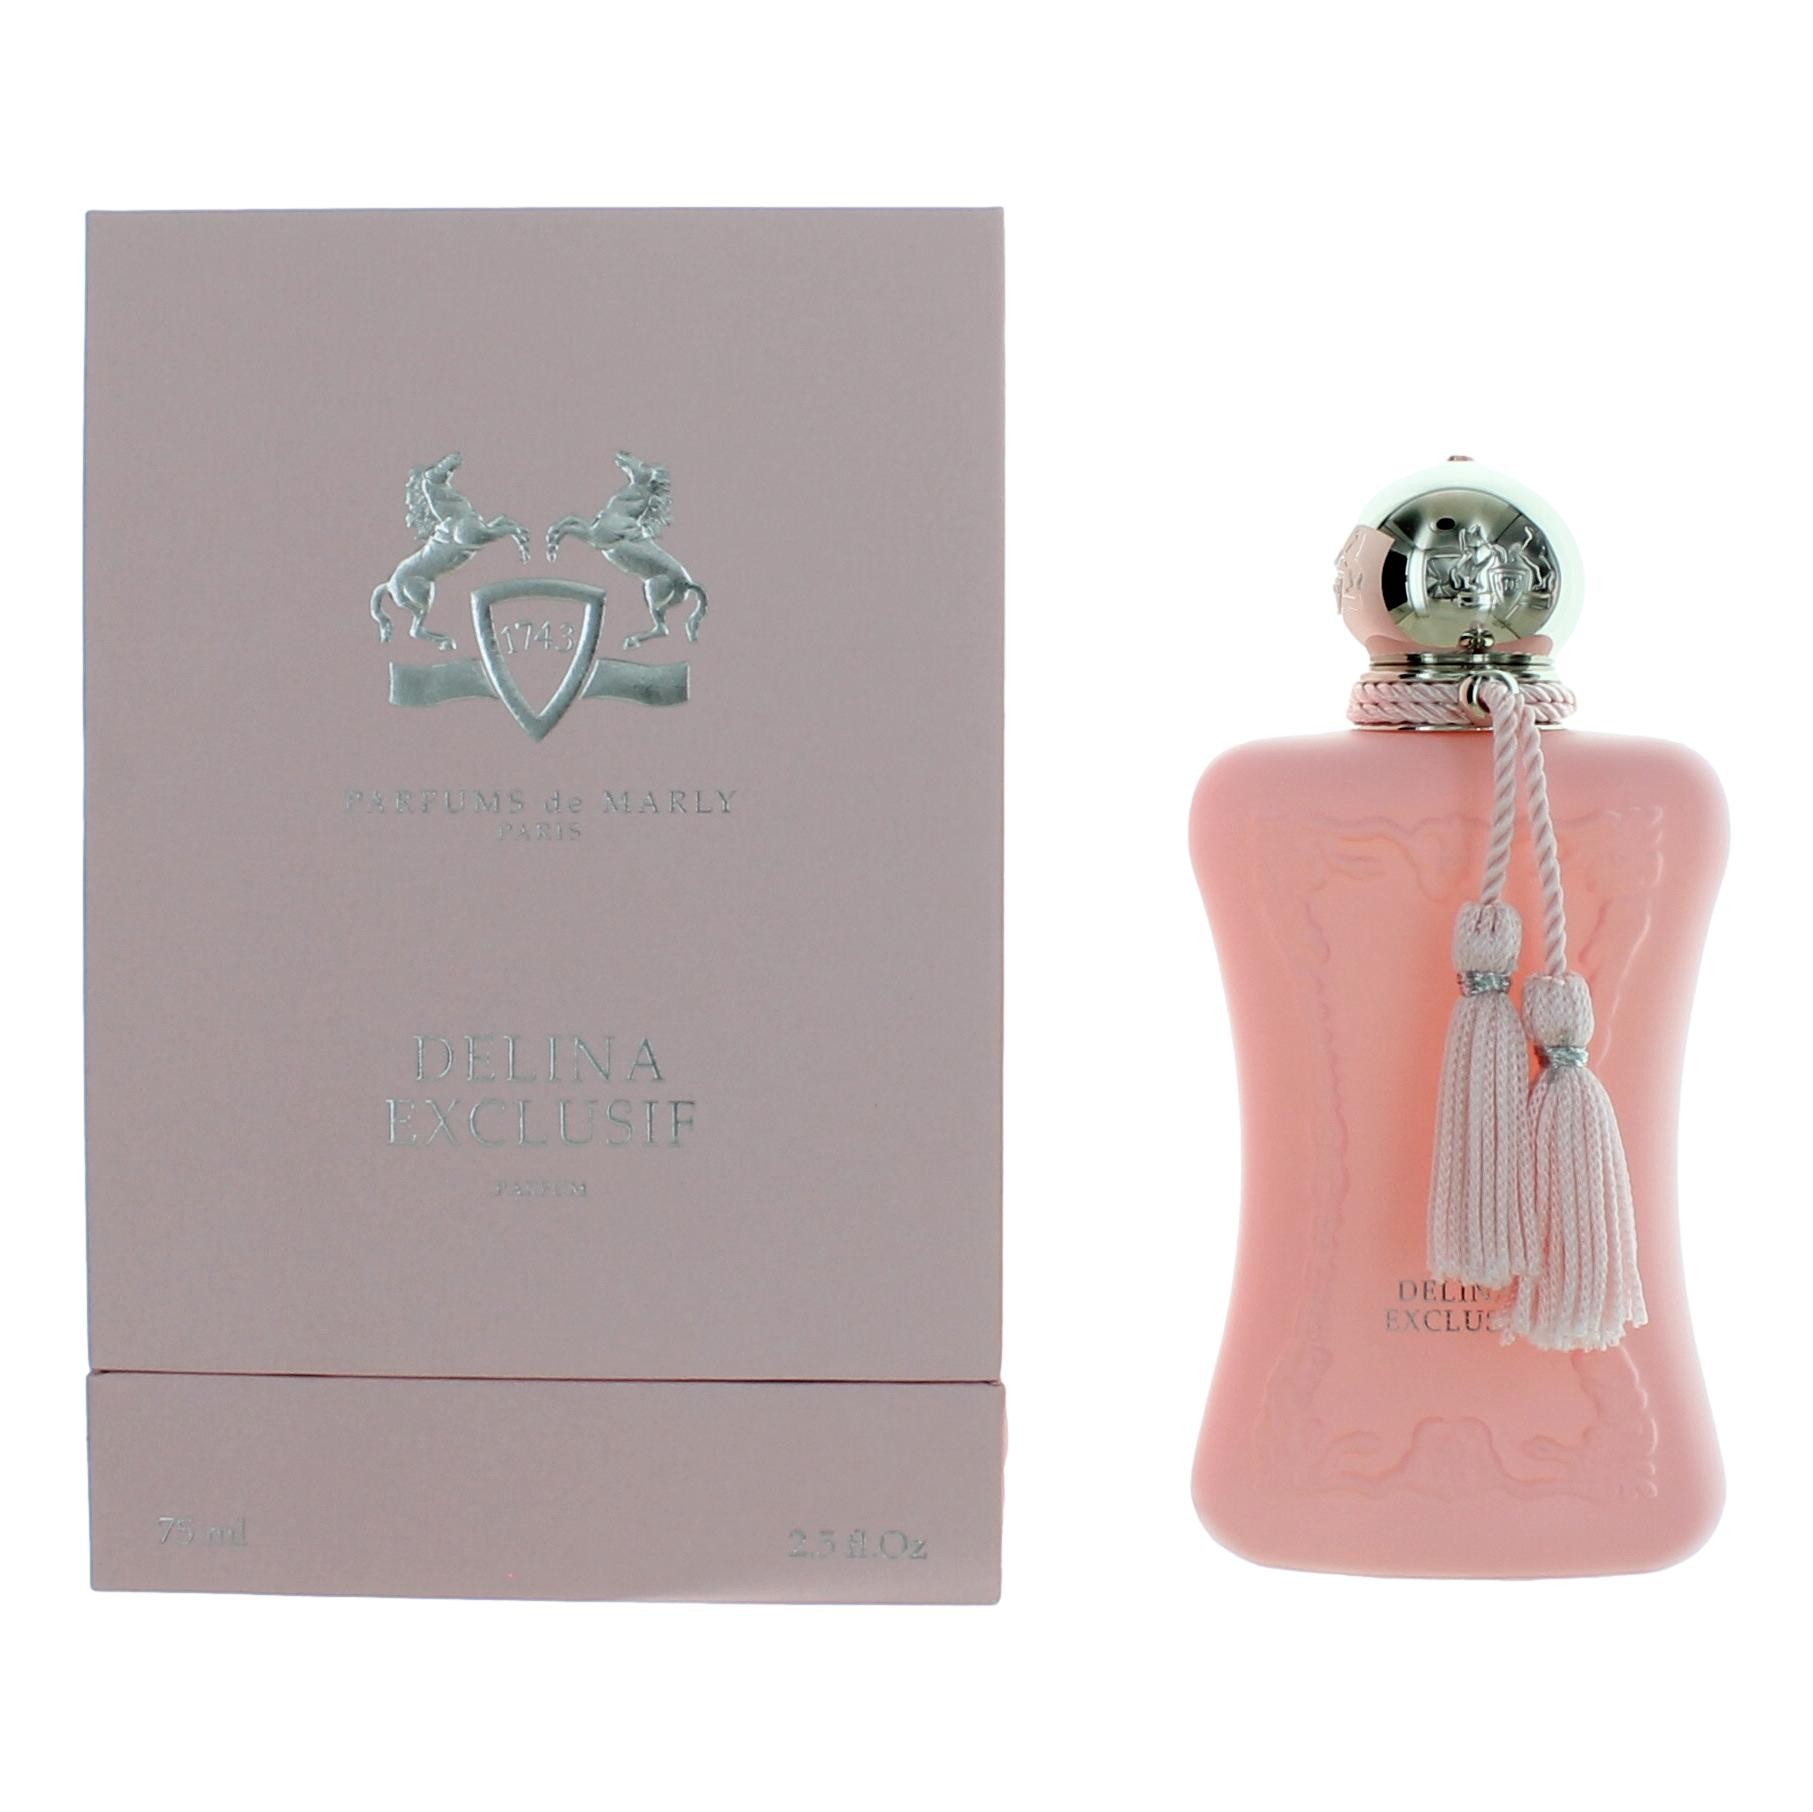 Parfums de Marly Delina Exclusif by Parfums de Marly 2.5 oz Eau De Parfum Spray for Women